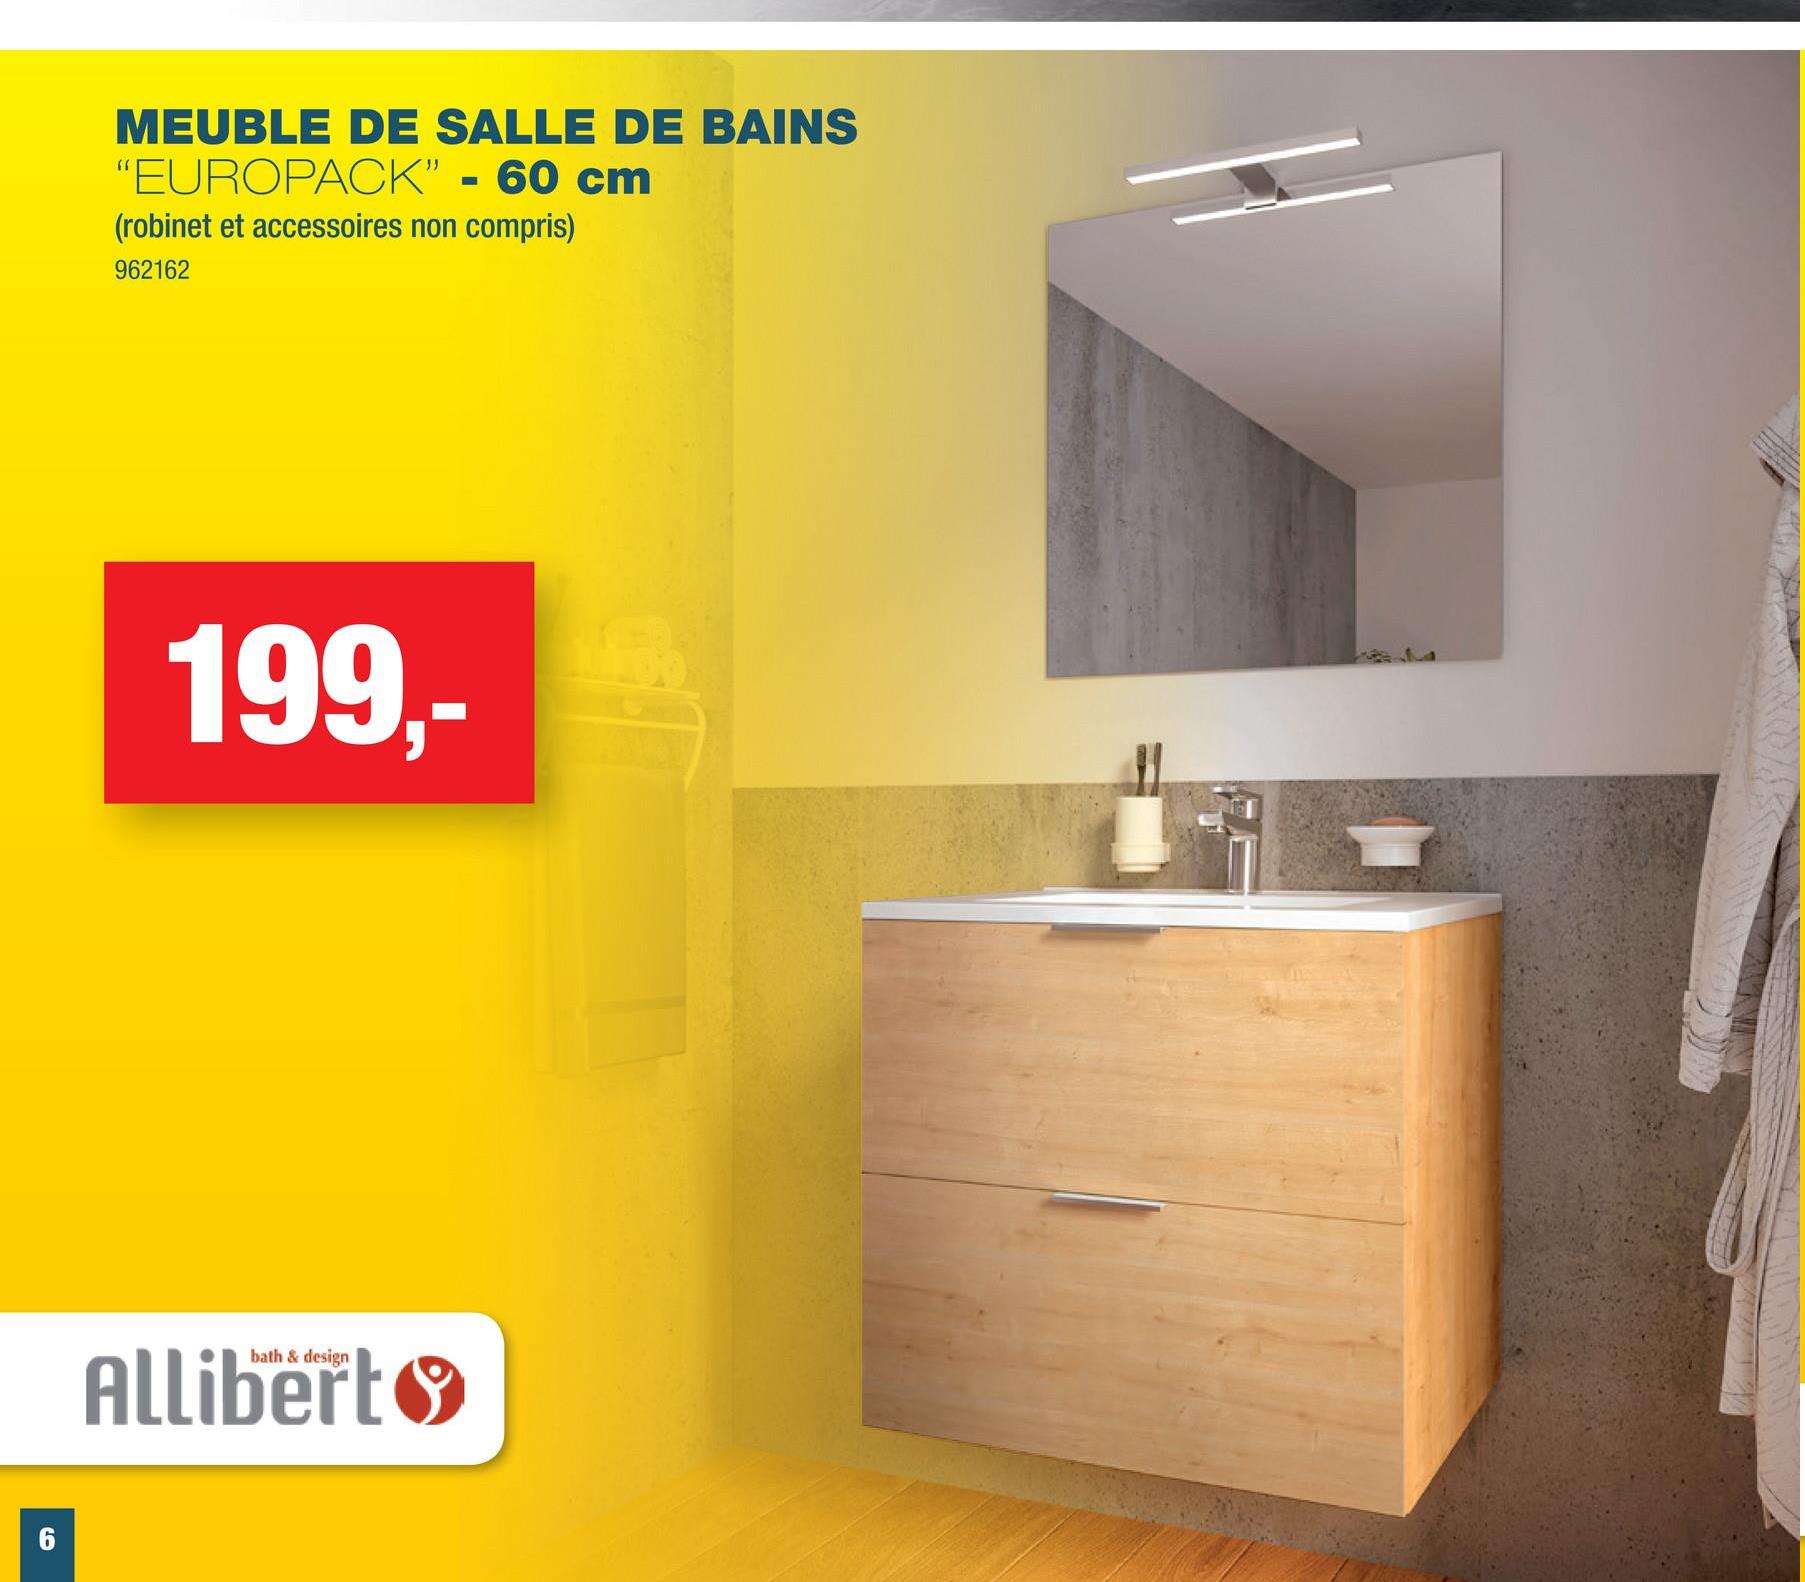 MEUBLE DE SALLE DE BAINS
- 60 cm
"EUROPACK"
(robinet et accessoires non compris)
962162
199,-
bath & design